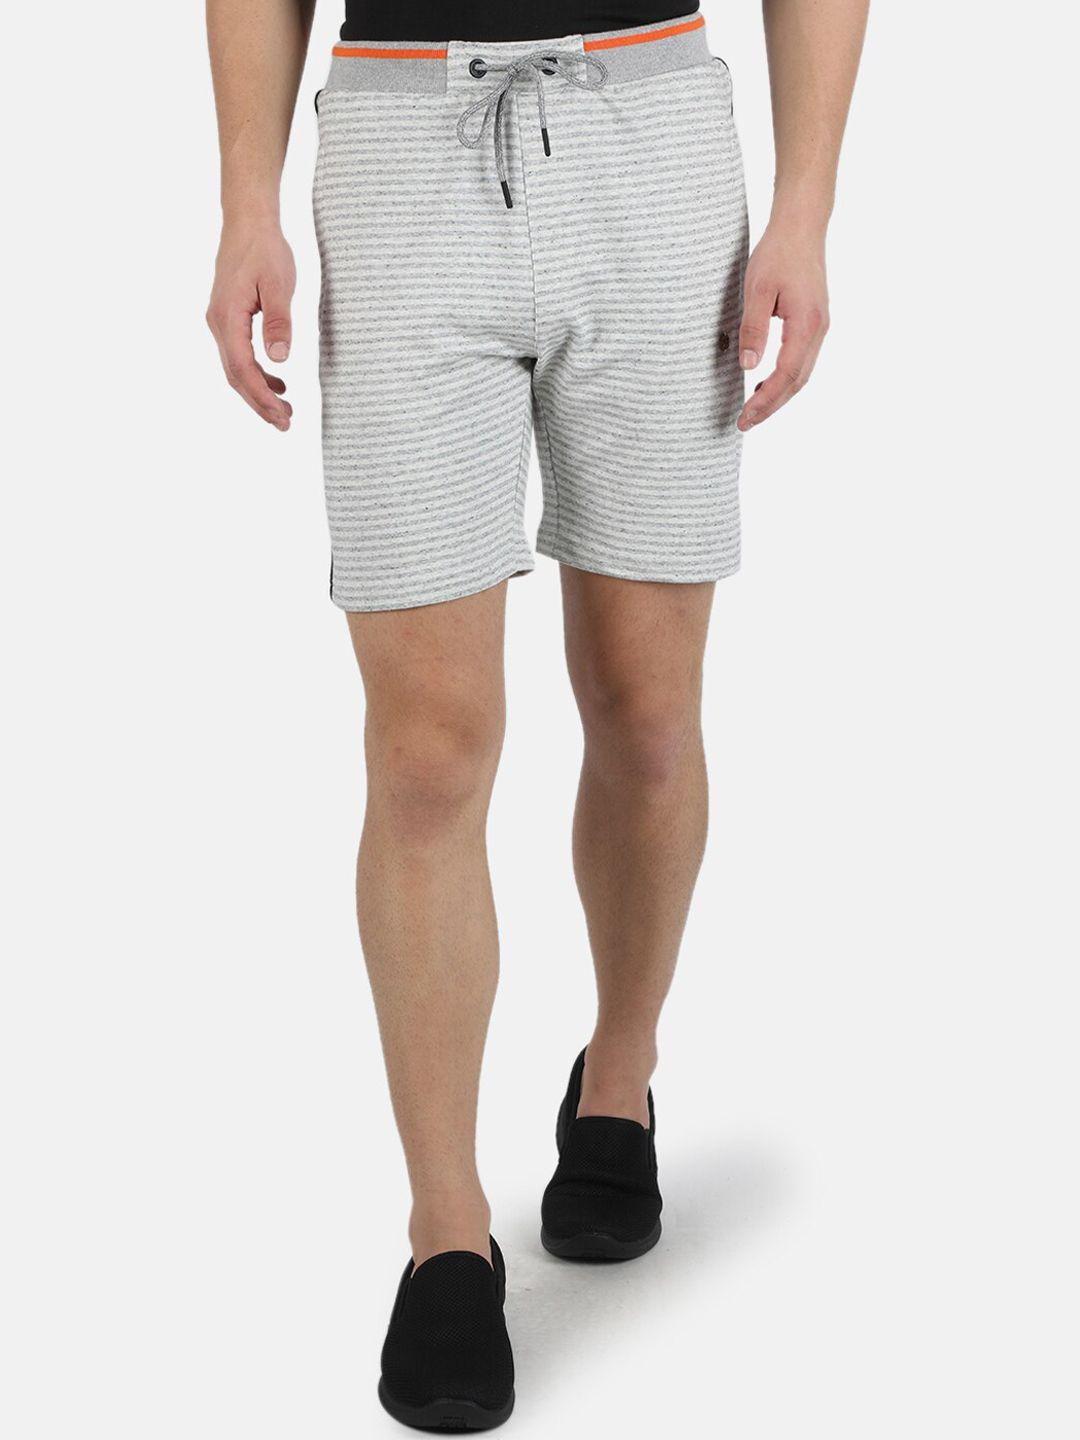 monte carlo men grey shorts